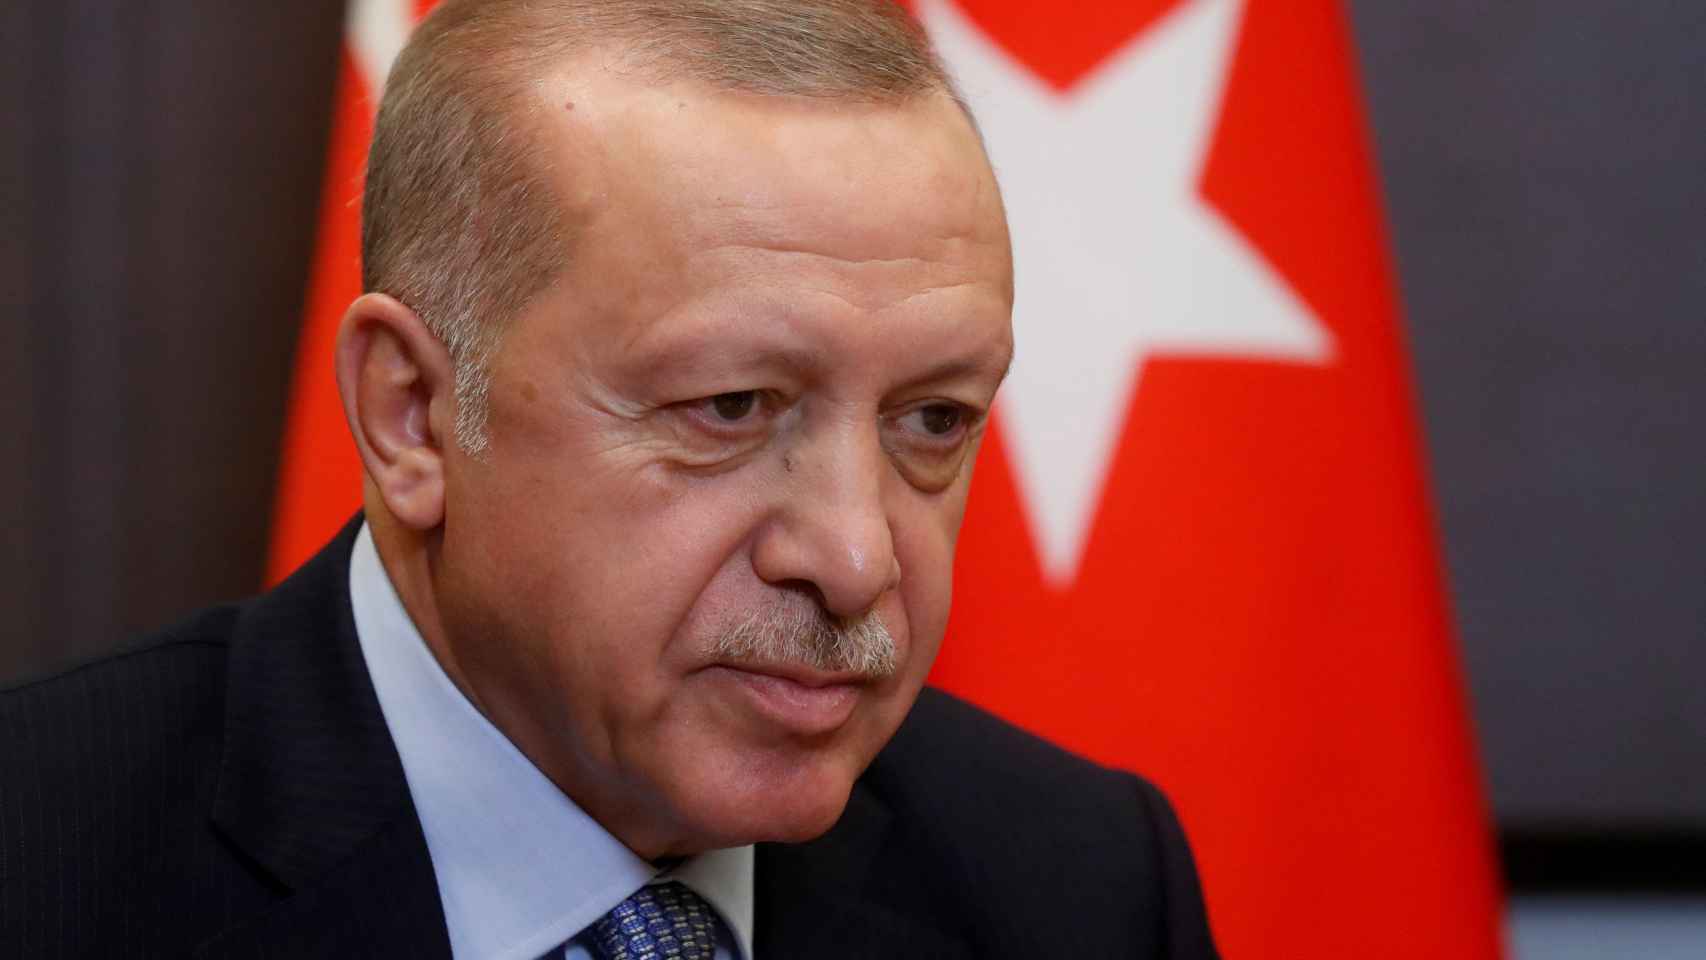 Recep Tayipp Erdogan ha arremetido contra Emmanuel Macron por cuestionar su actuación en Siria